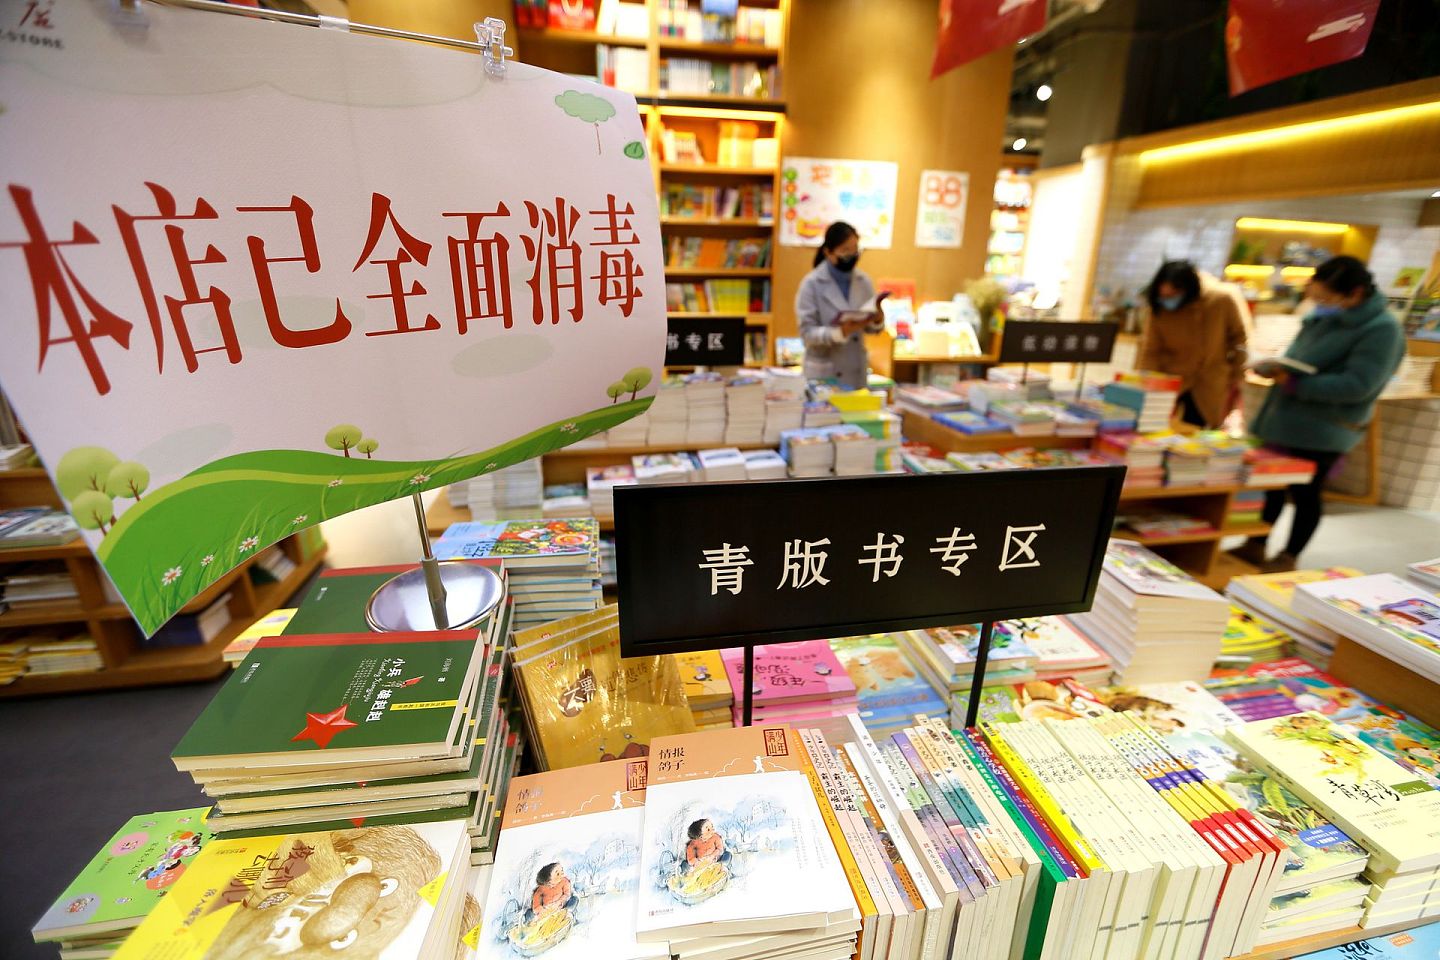 中国的经济活动正在恢复正常。图为3月14日中国山东省青岛市即墨区新华书店在做好疫情防控工作的前提下复工营业。（新华社）